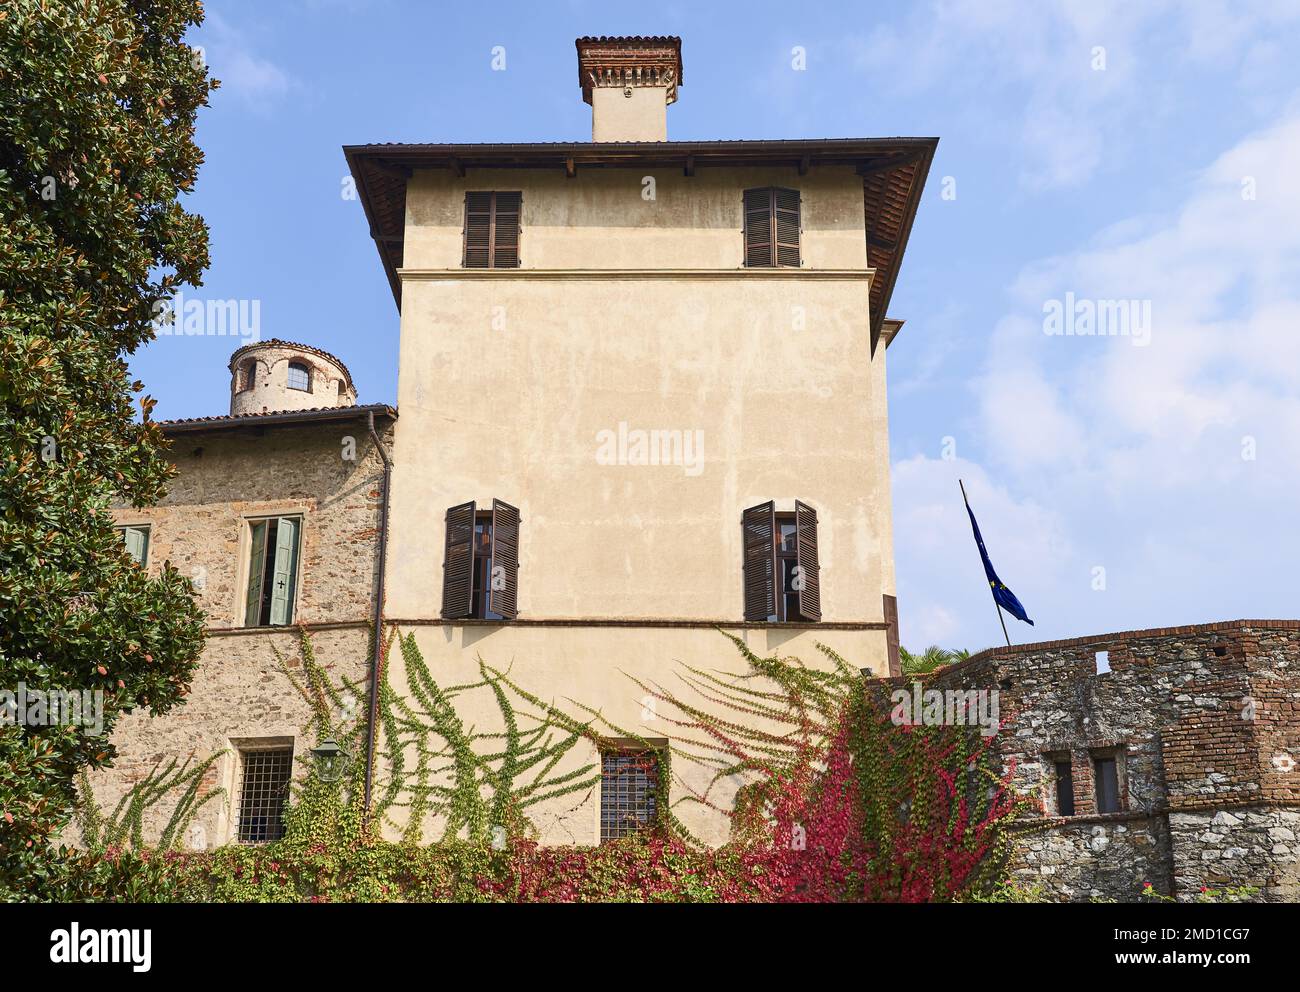 Manta, Itaky, vista exterior del palacio del siglo XVI de Valerano Saluzzo Della Manta conocido como Castello Della Manta Foto de stock